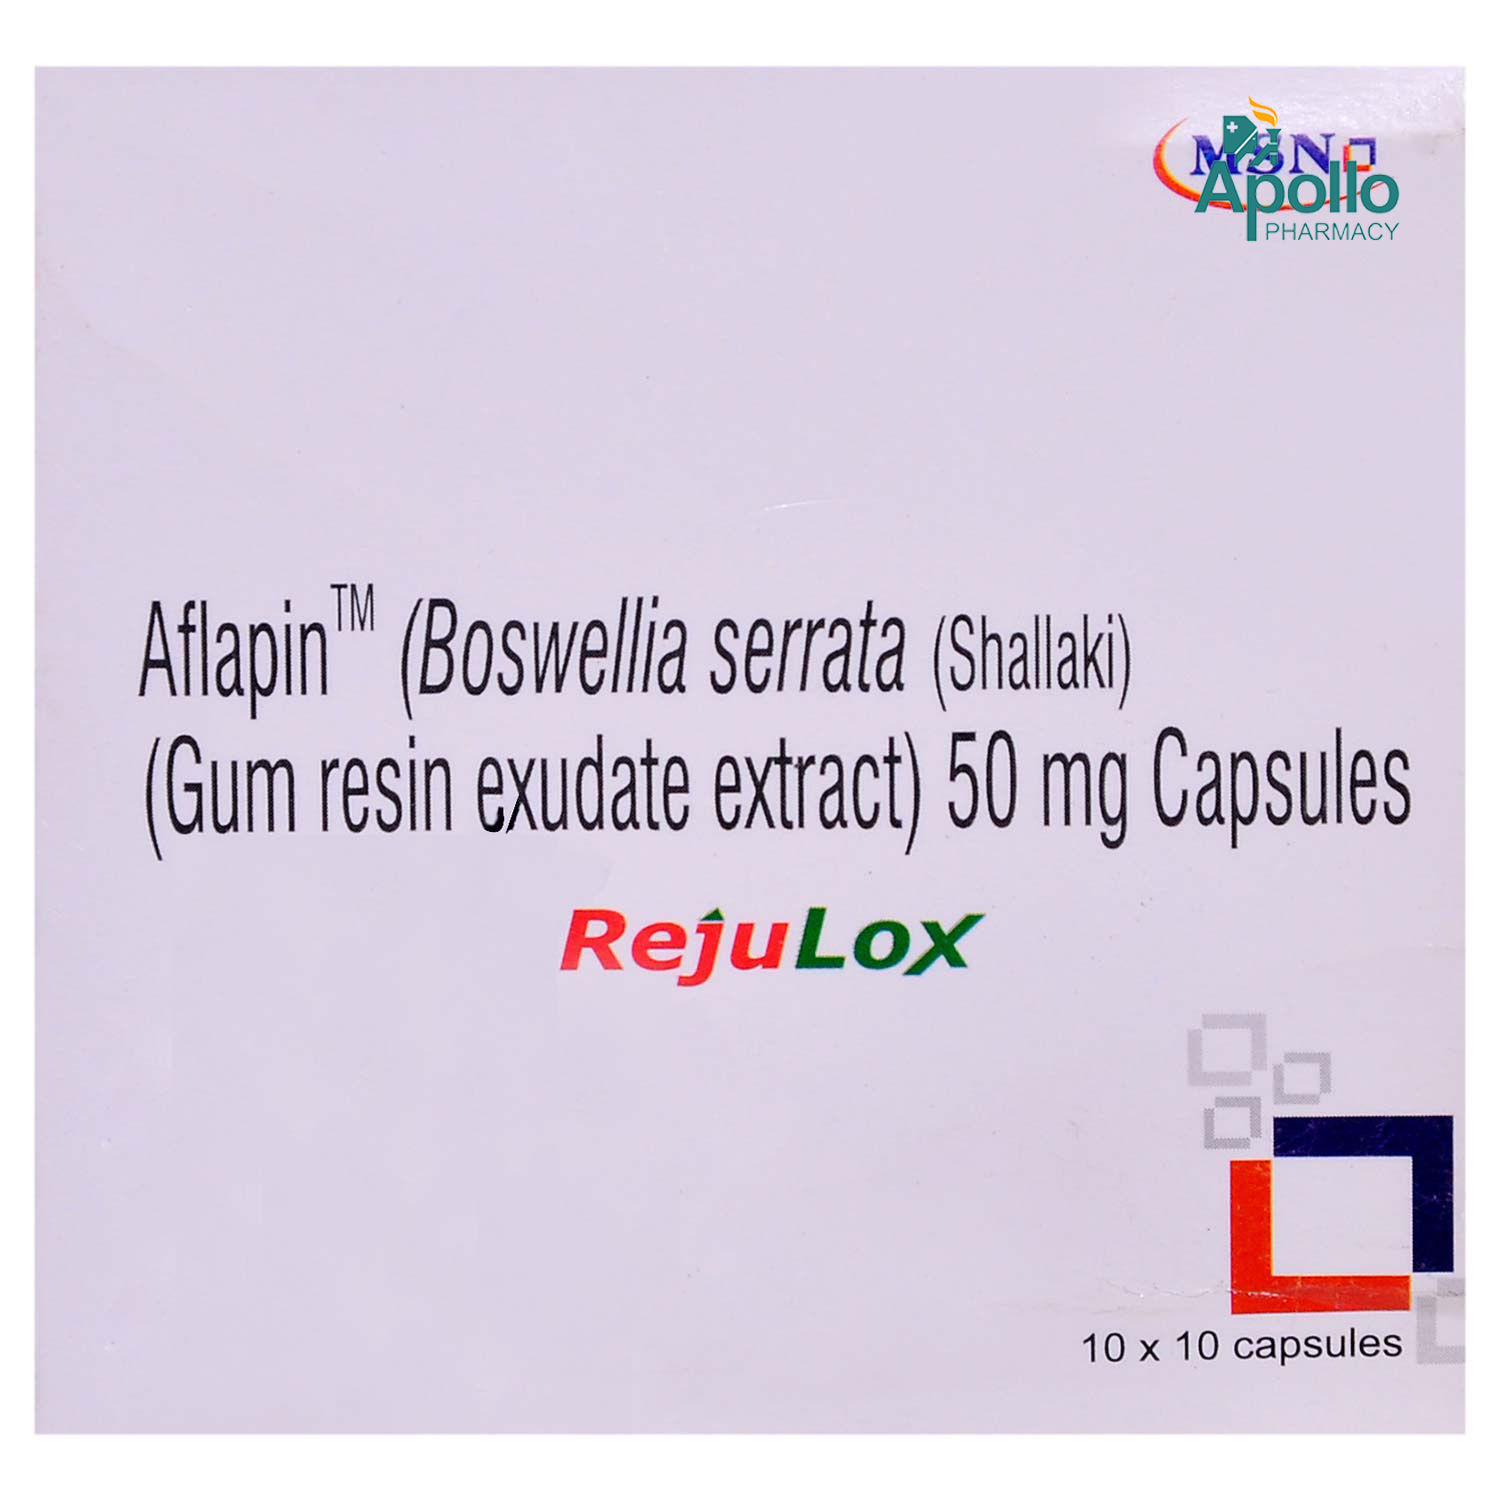 Buy REJULOX 50MG CAPSULE 10'S Online